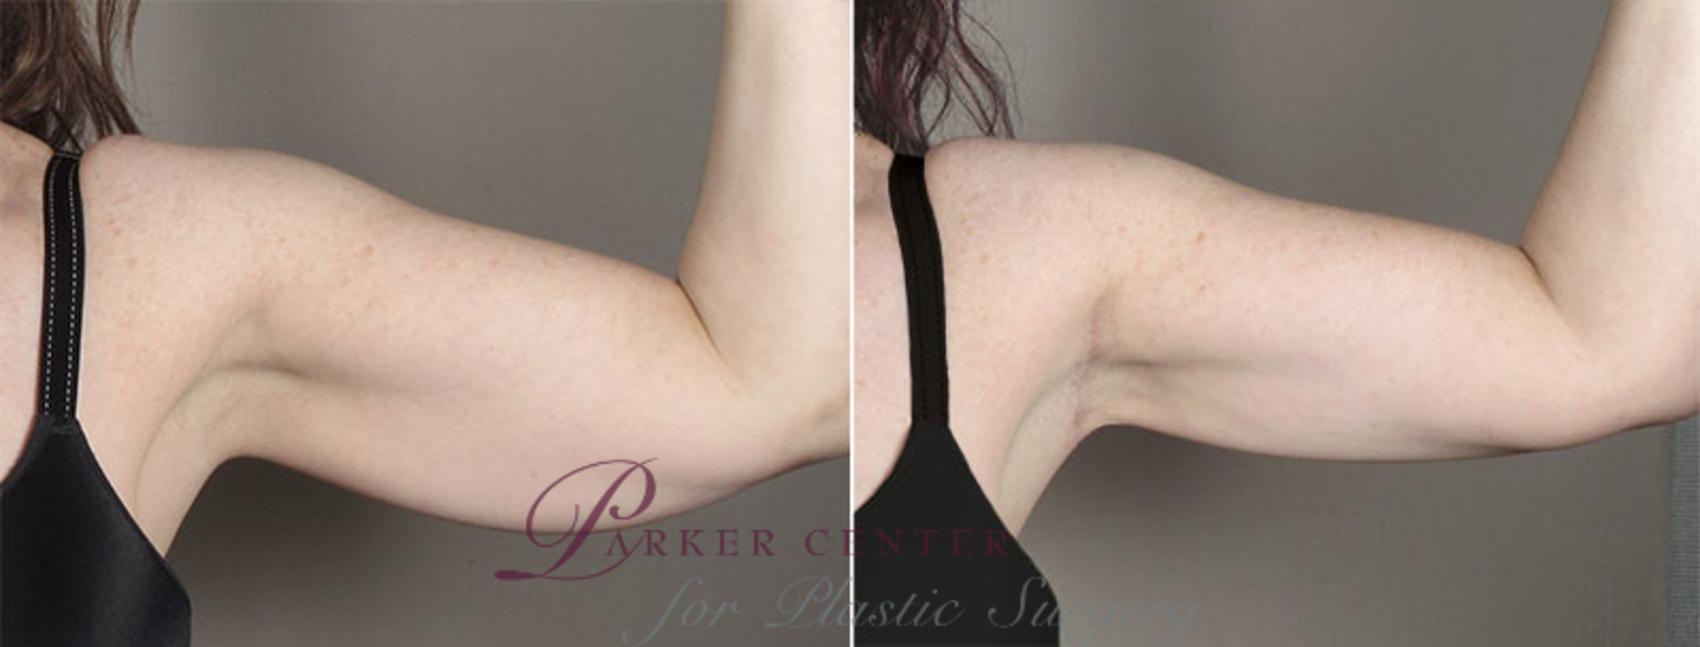 Upper Arm Rejuvenation Case 831 Before & After View #2 | Paramus, NJ | Parker Center for Plastic Surgery